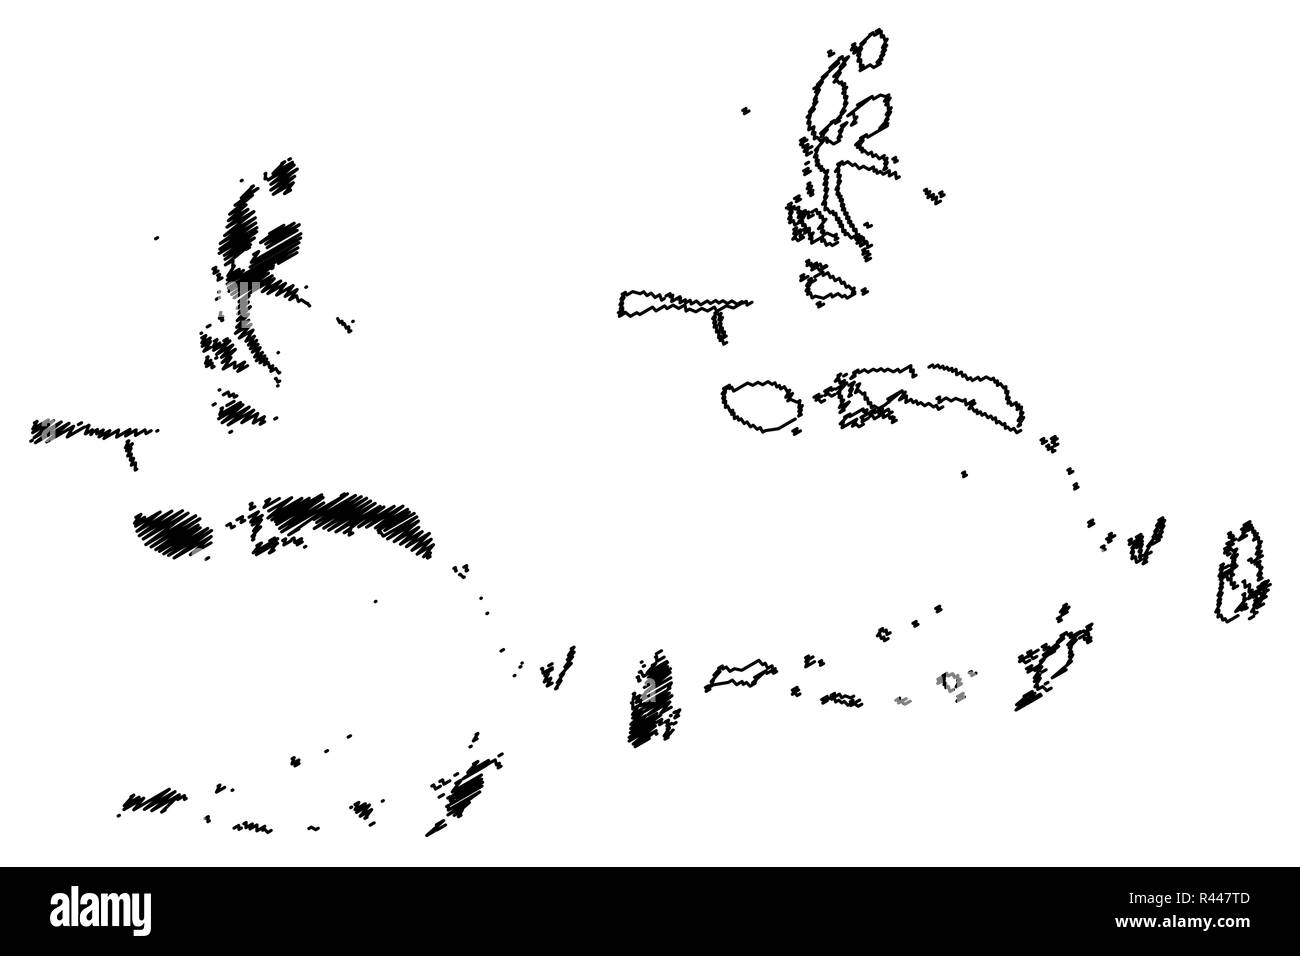 Sunda-inseln (Unterteilungen von Indonesien, Provinzen Indonesiens) Karte Vektor-illustration, kritzeln Skizze den Molukken (Gewürzinseln, Maluku, Nord Mal Stock Vektor